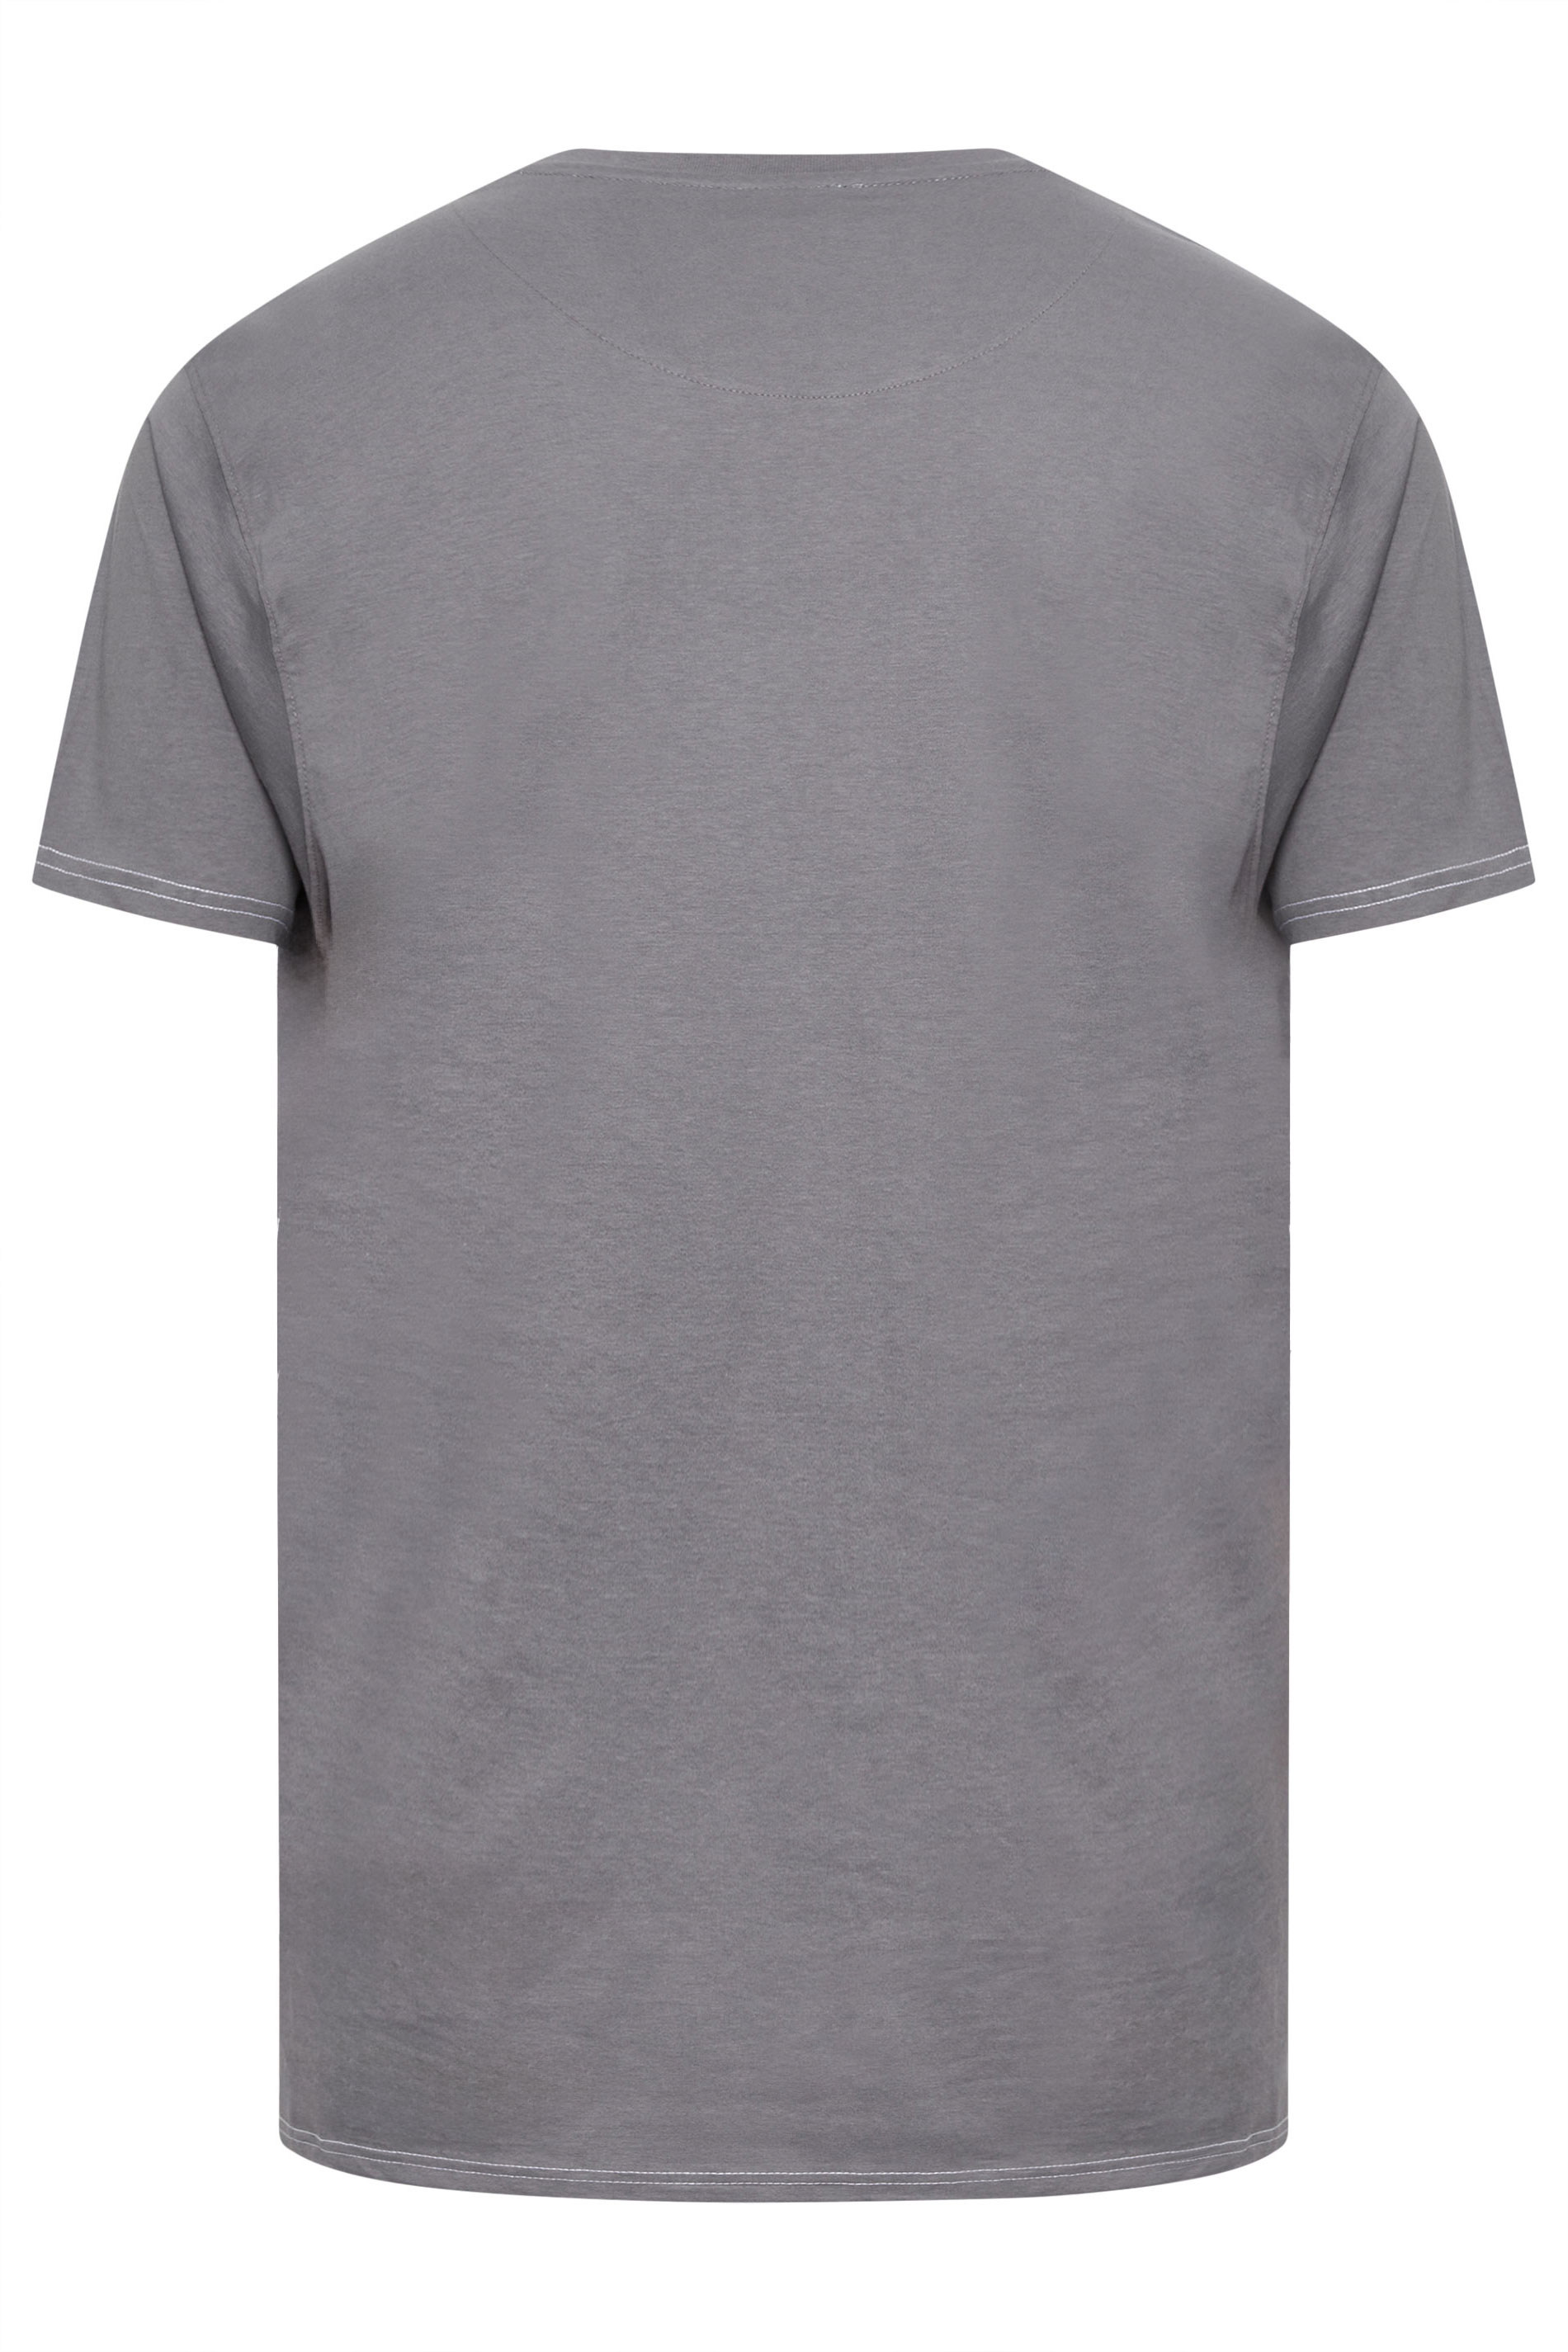 KAM Big & Tall Grey 'Americal Muscle' Print T-Shirt | BadRhino 3